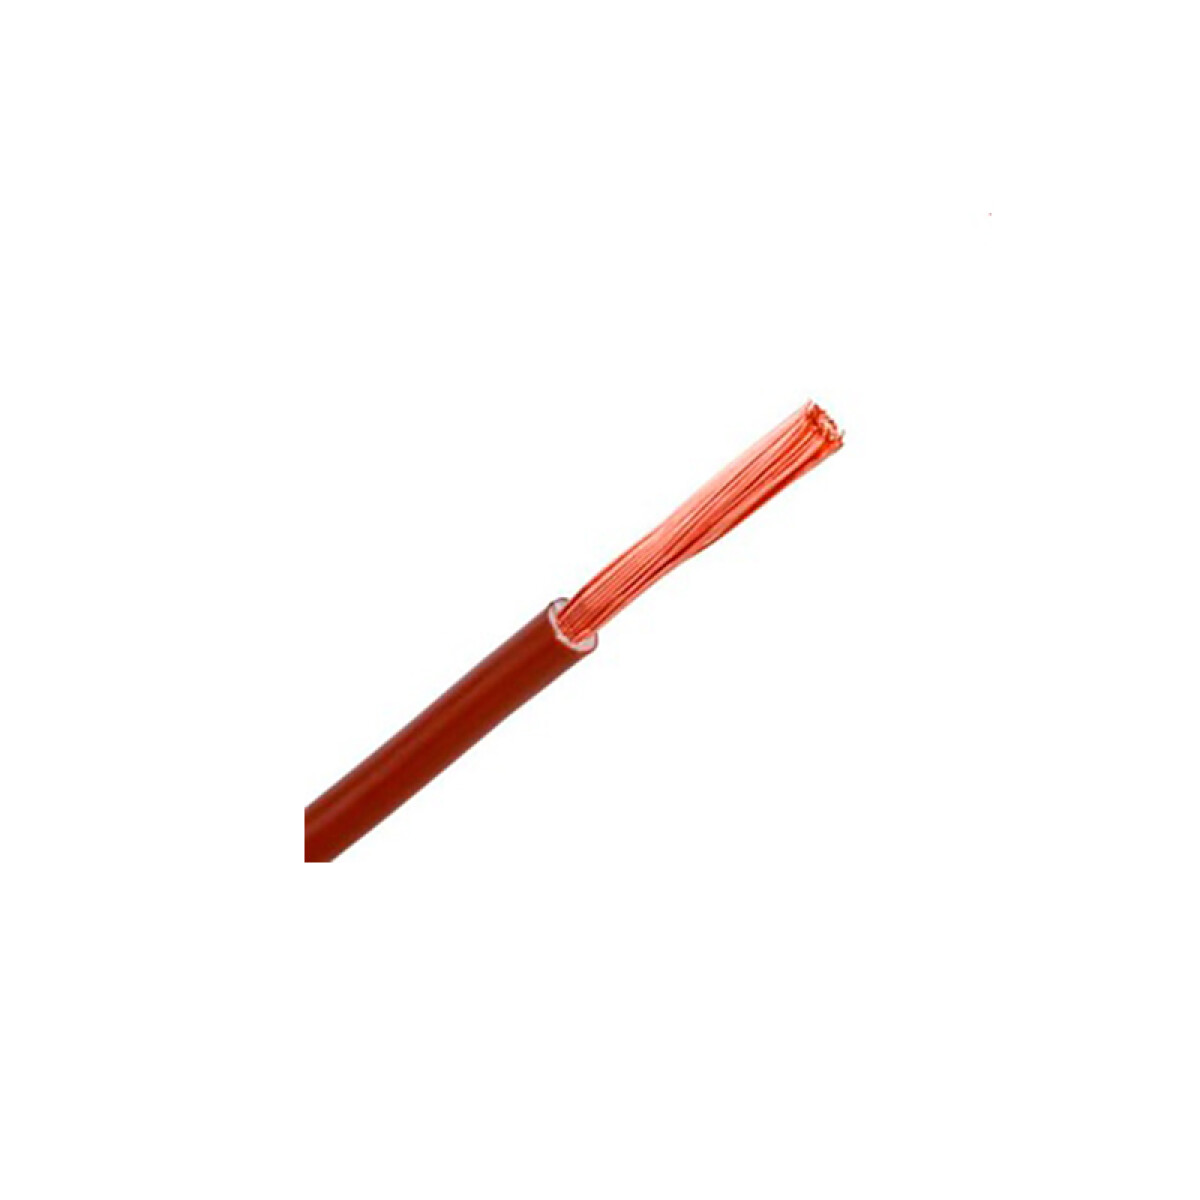 Cable de cobre flexible 0,75mm² marrón-Rollo 100mt - C94306 